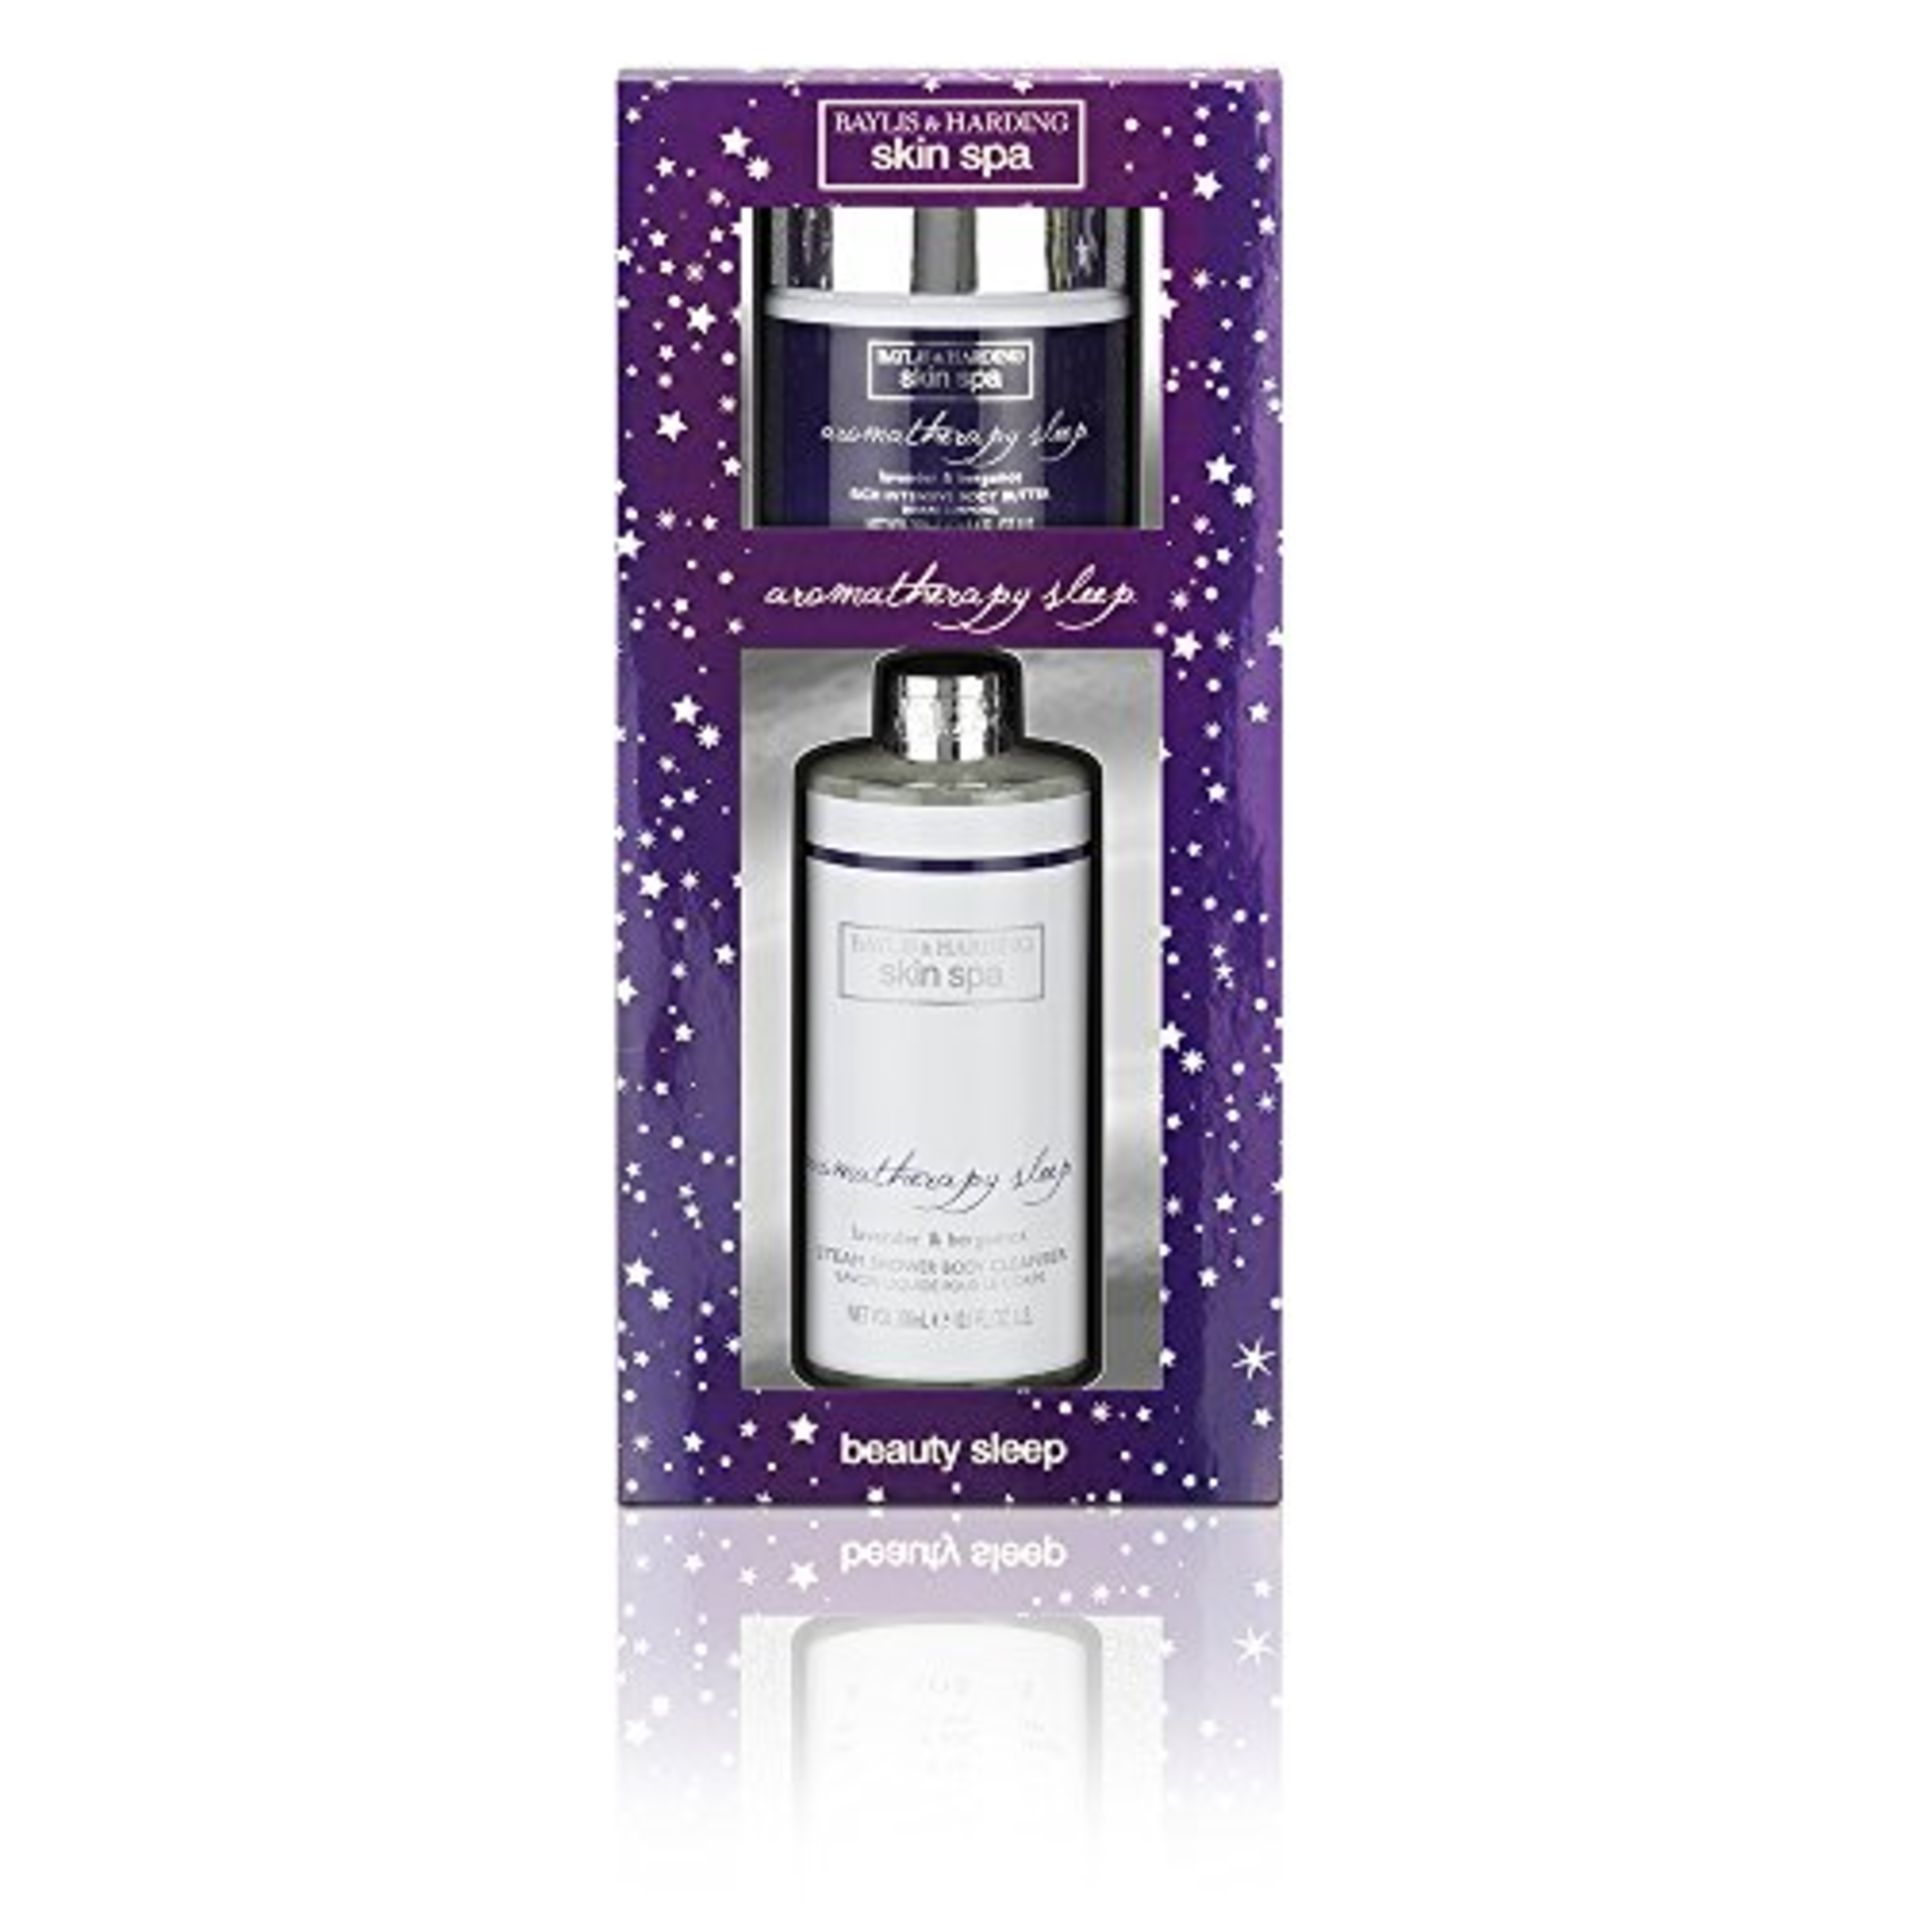 + VAT Brand New Baylis & Harding Skin Spa Aromatherapy Sleep Gift Set ISP £10